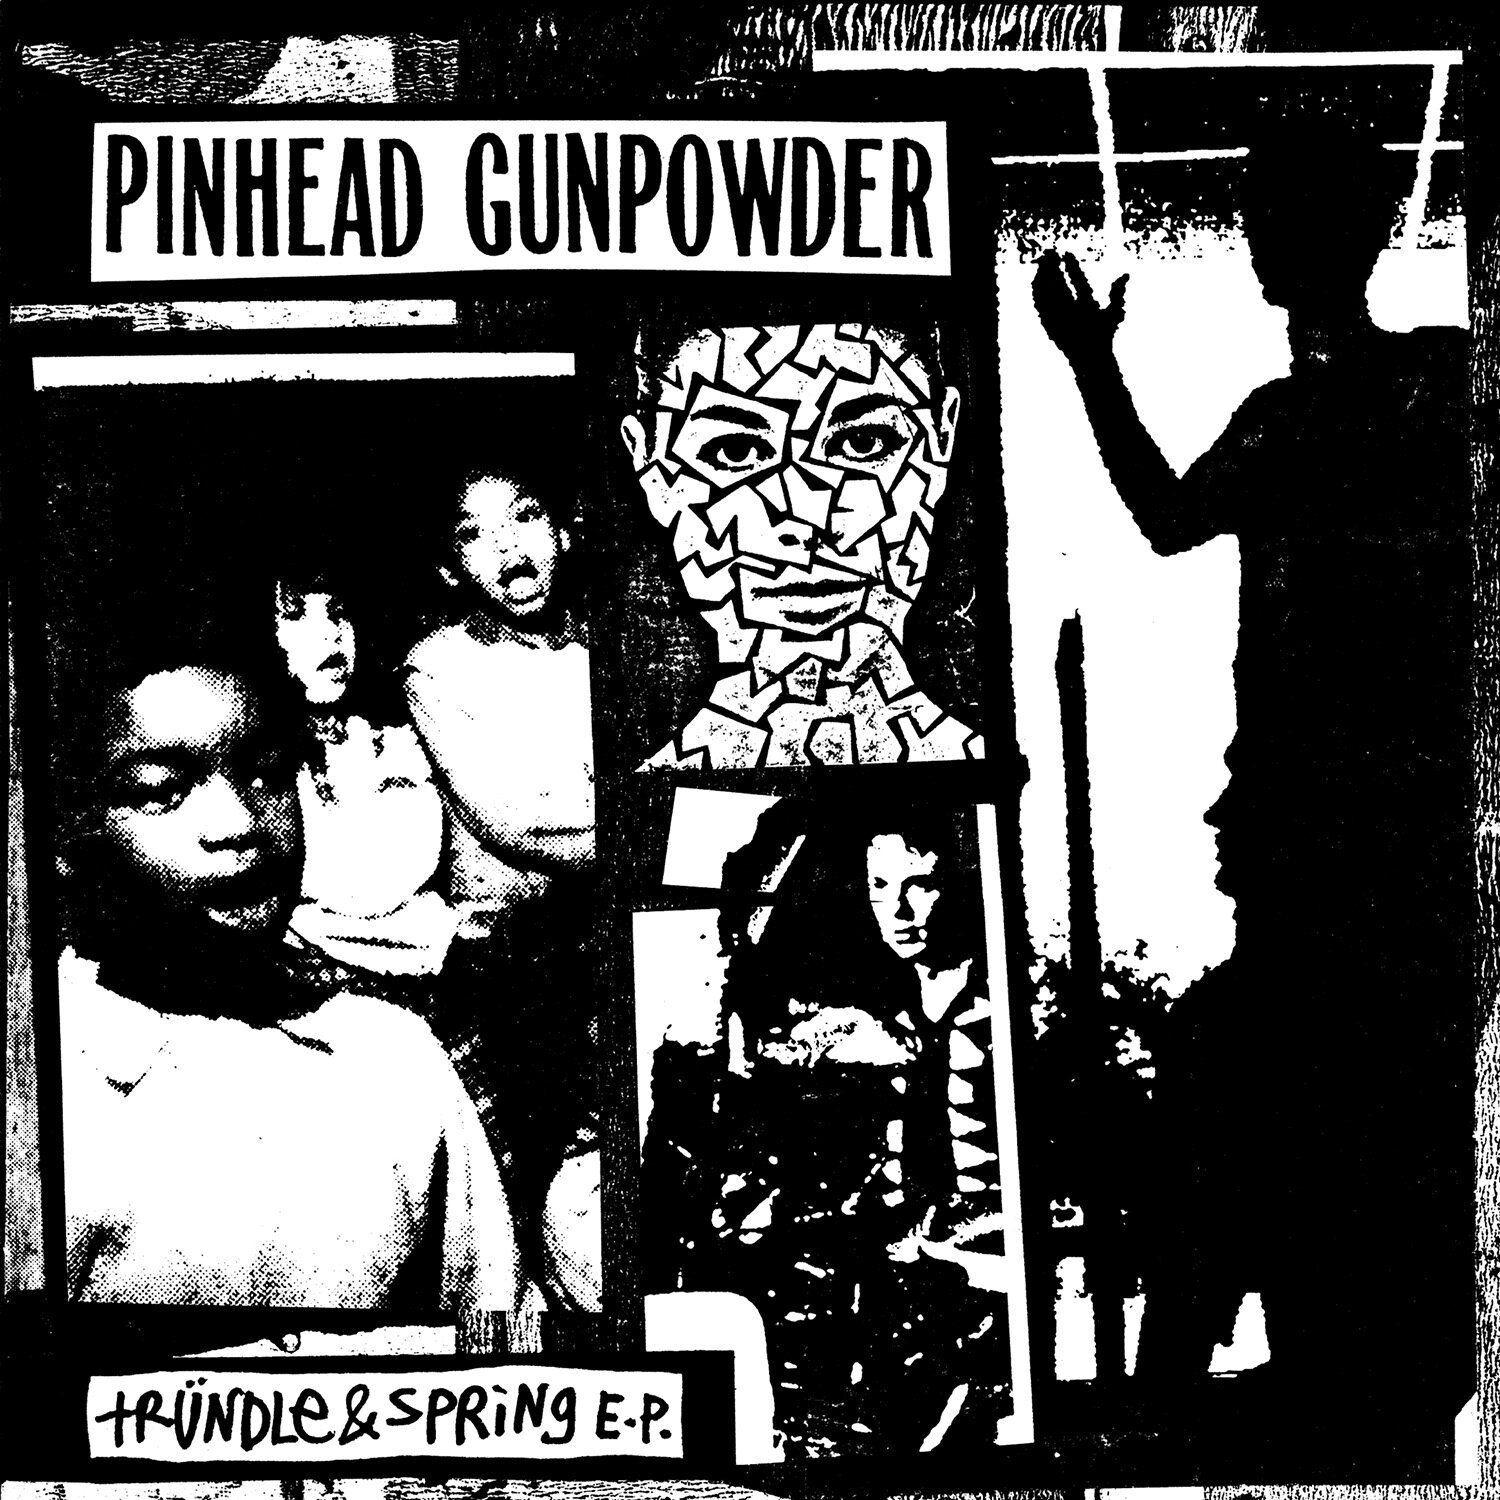 813円 大人気の 美盤 ディリンジャー フォー ピンヘッド ガンパウダー Dillinger Four Pinhead Gunpowder 2000年 EPレコード 米国盤 Punk